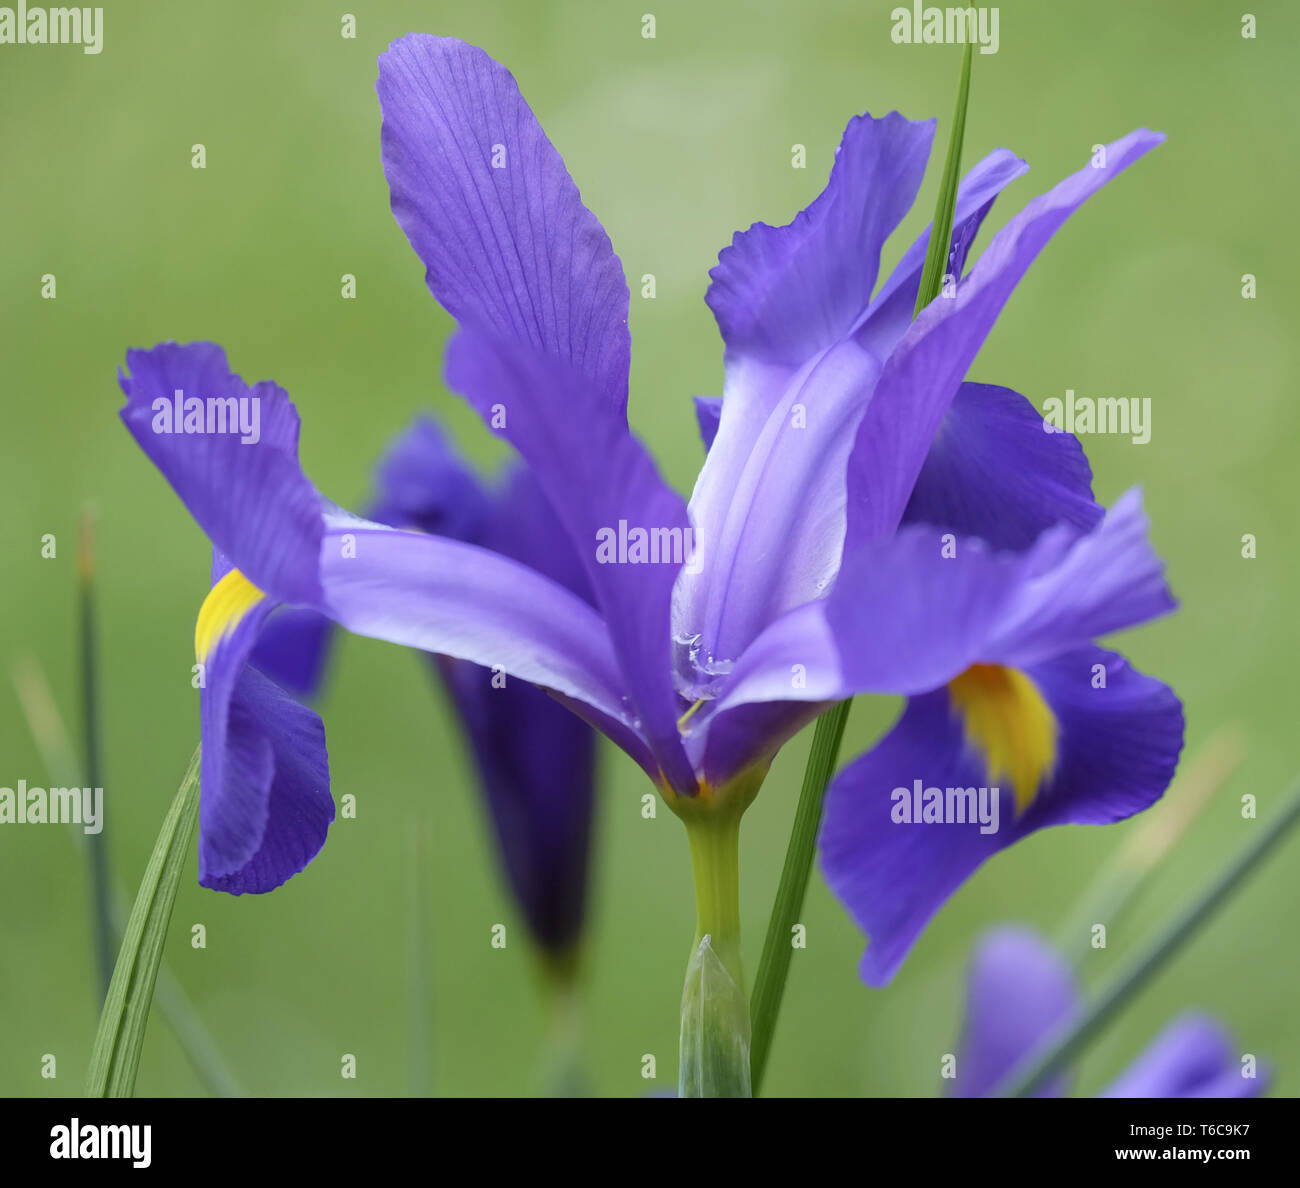 Dwarf iris or Dwarf iris (Iris pumila) Stock Photo